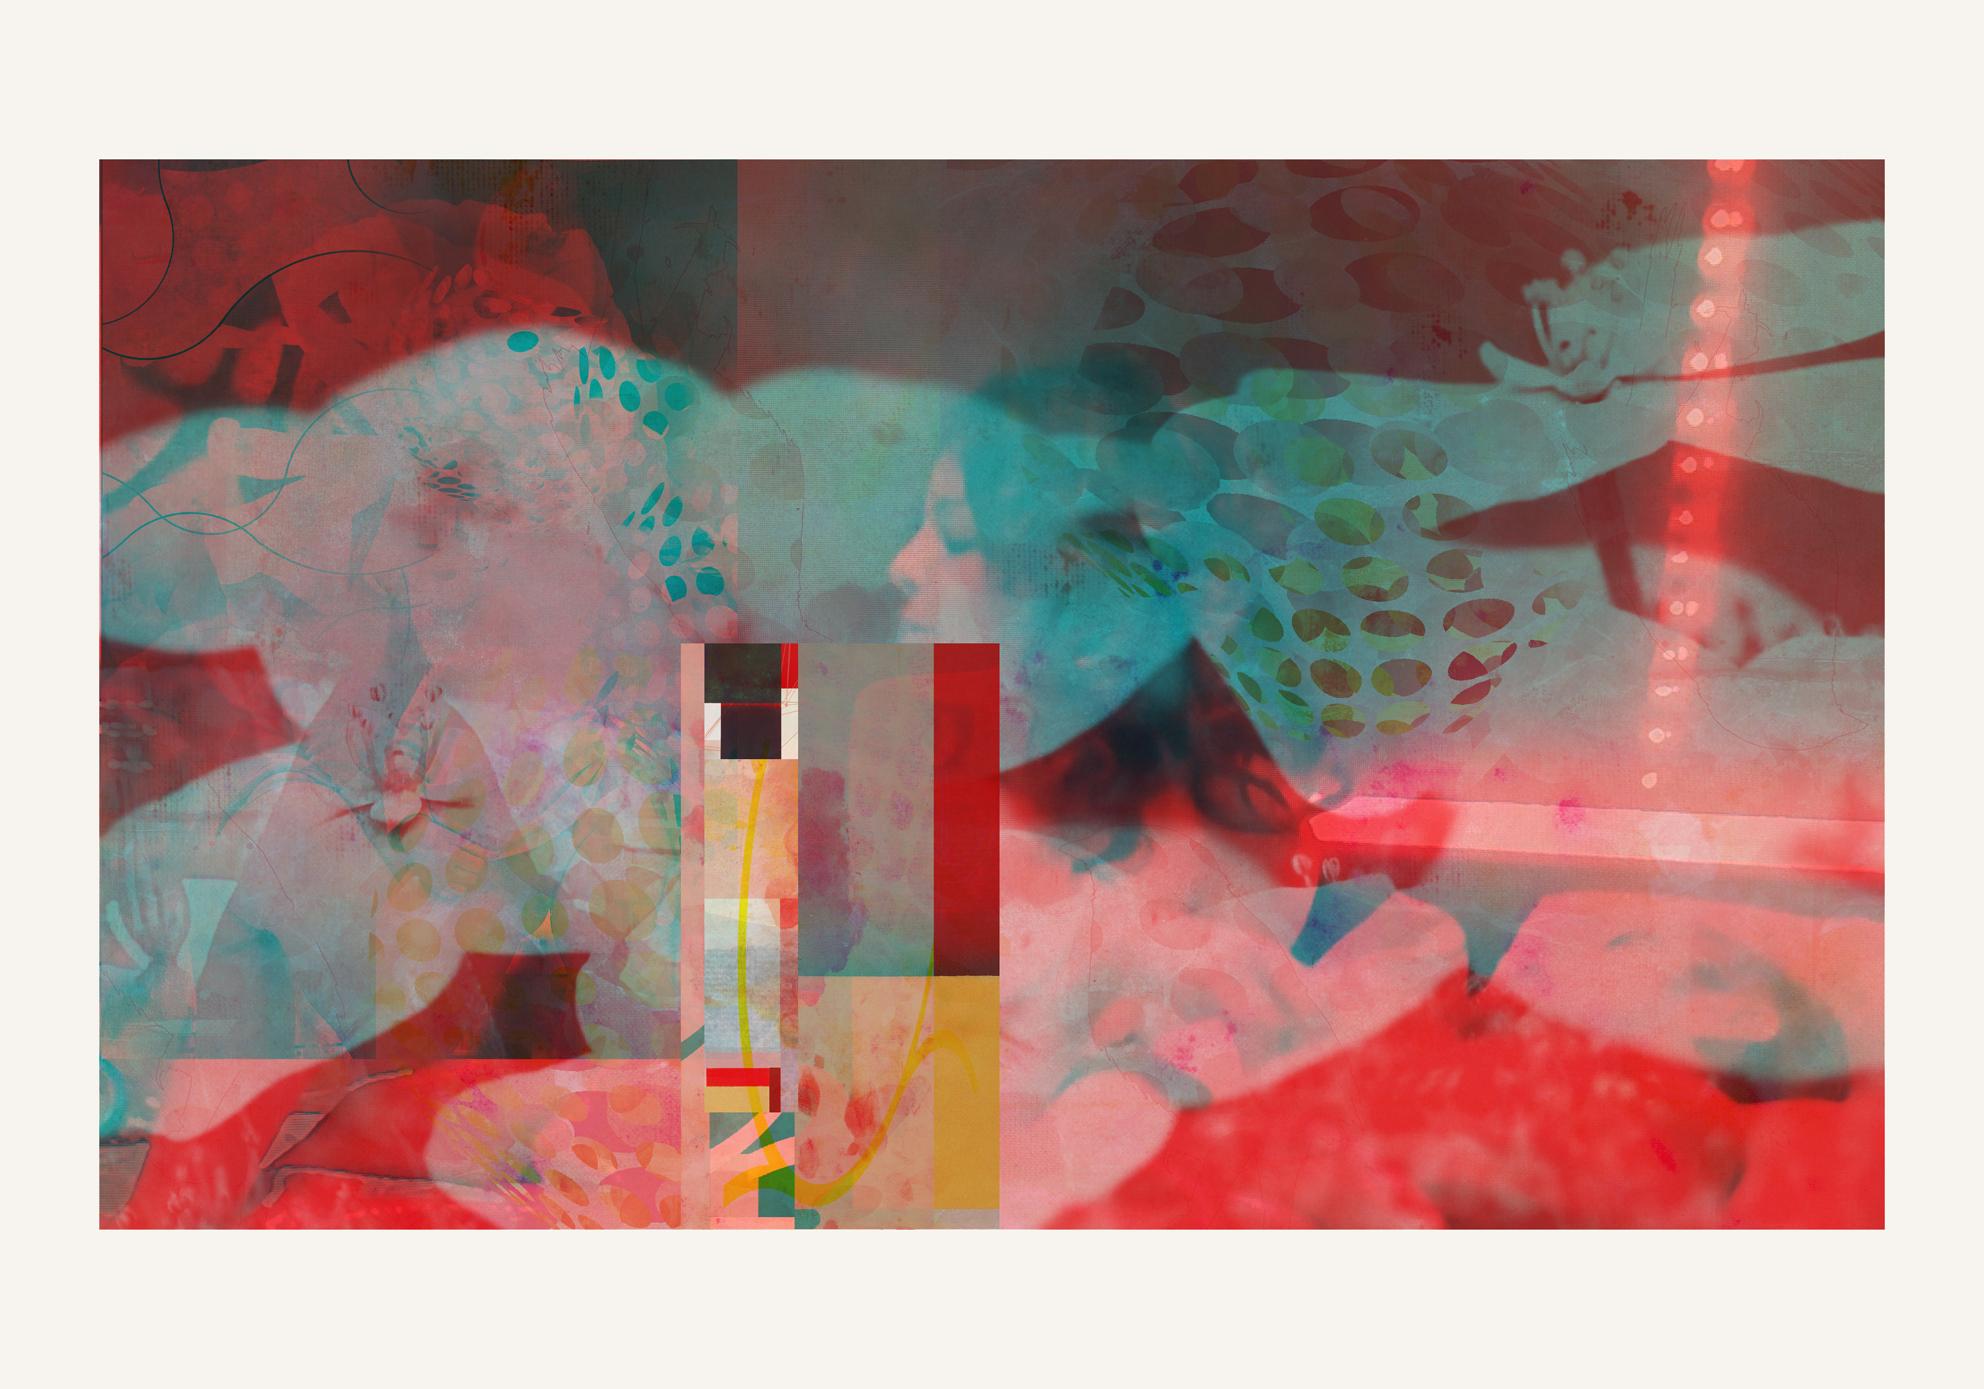 Francisco Nicolás Abstract Print – Lovers9 – Zeitgenössisch, Abstrakt, Minimalismus, Moderne, Expressionismus, Surrealistisch